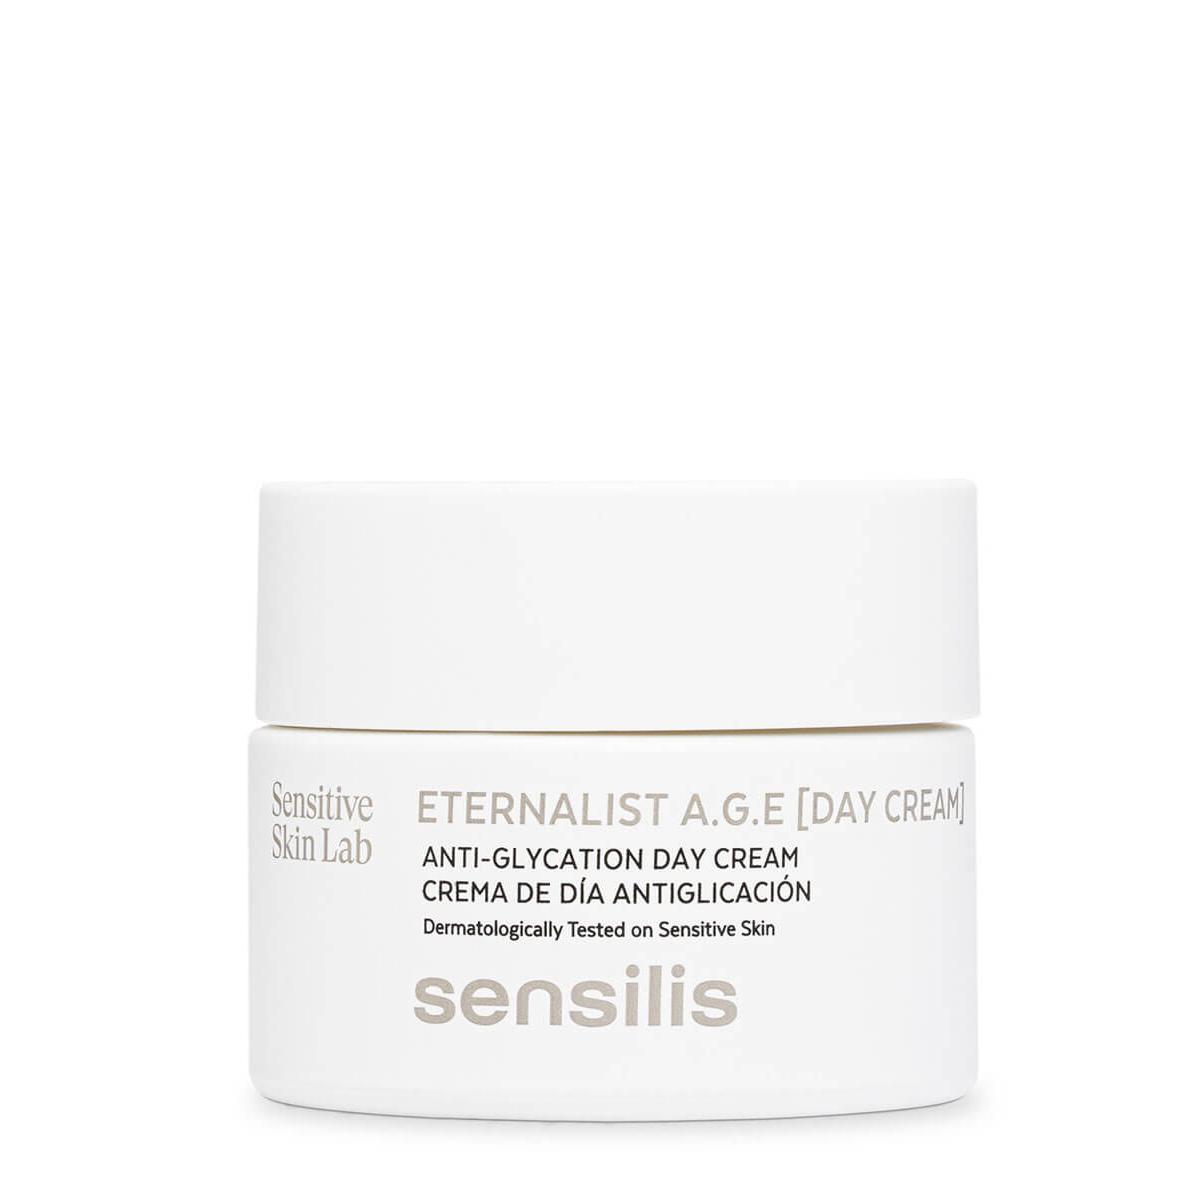 Sensilis - Sensilis eternalist a.g.e crema de día 50 ml